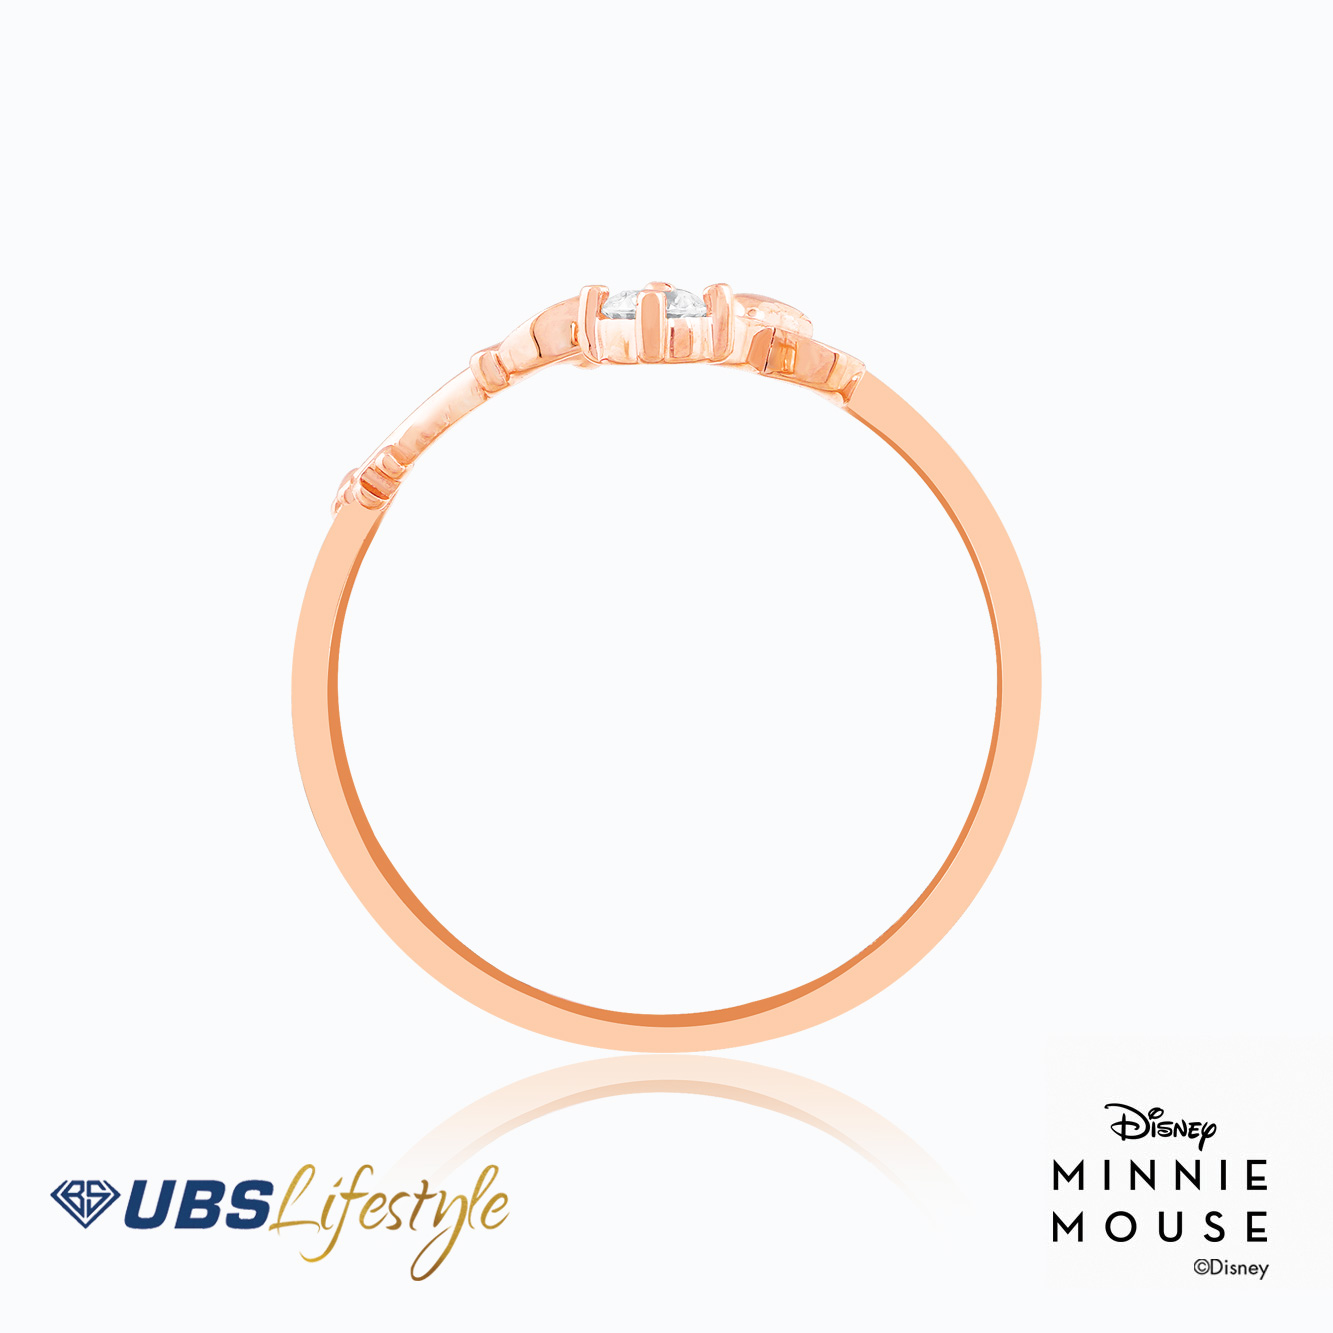 UBS Cincin Emas Disney Minnie Mouse - Ccy0175R - 17K